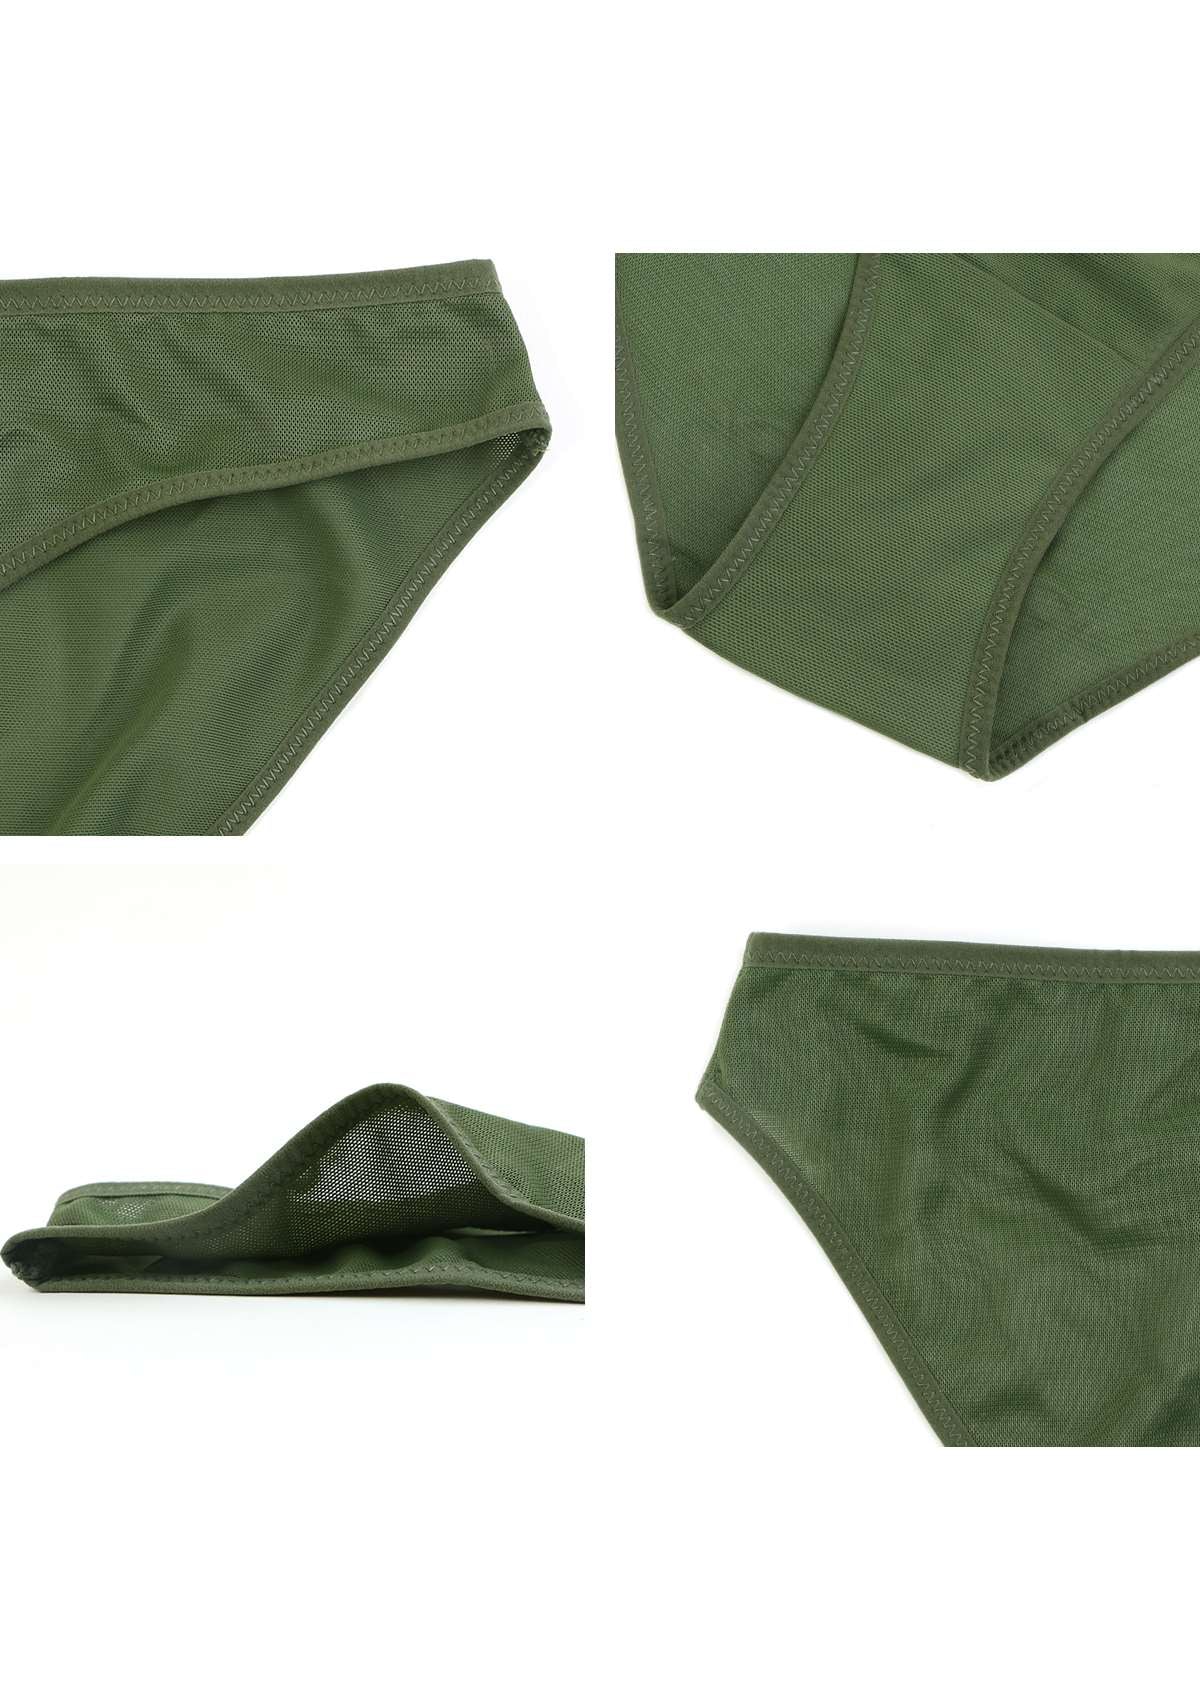 HSIA Billie Smooth Sheer Mesh Lightweight Soft Comfy Bikini Underwear - XL / Dark Green